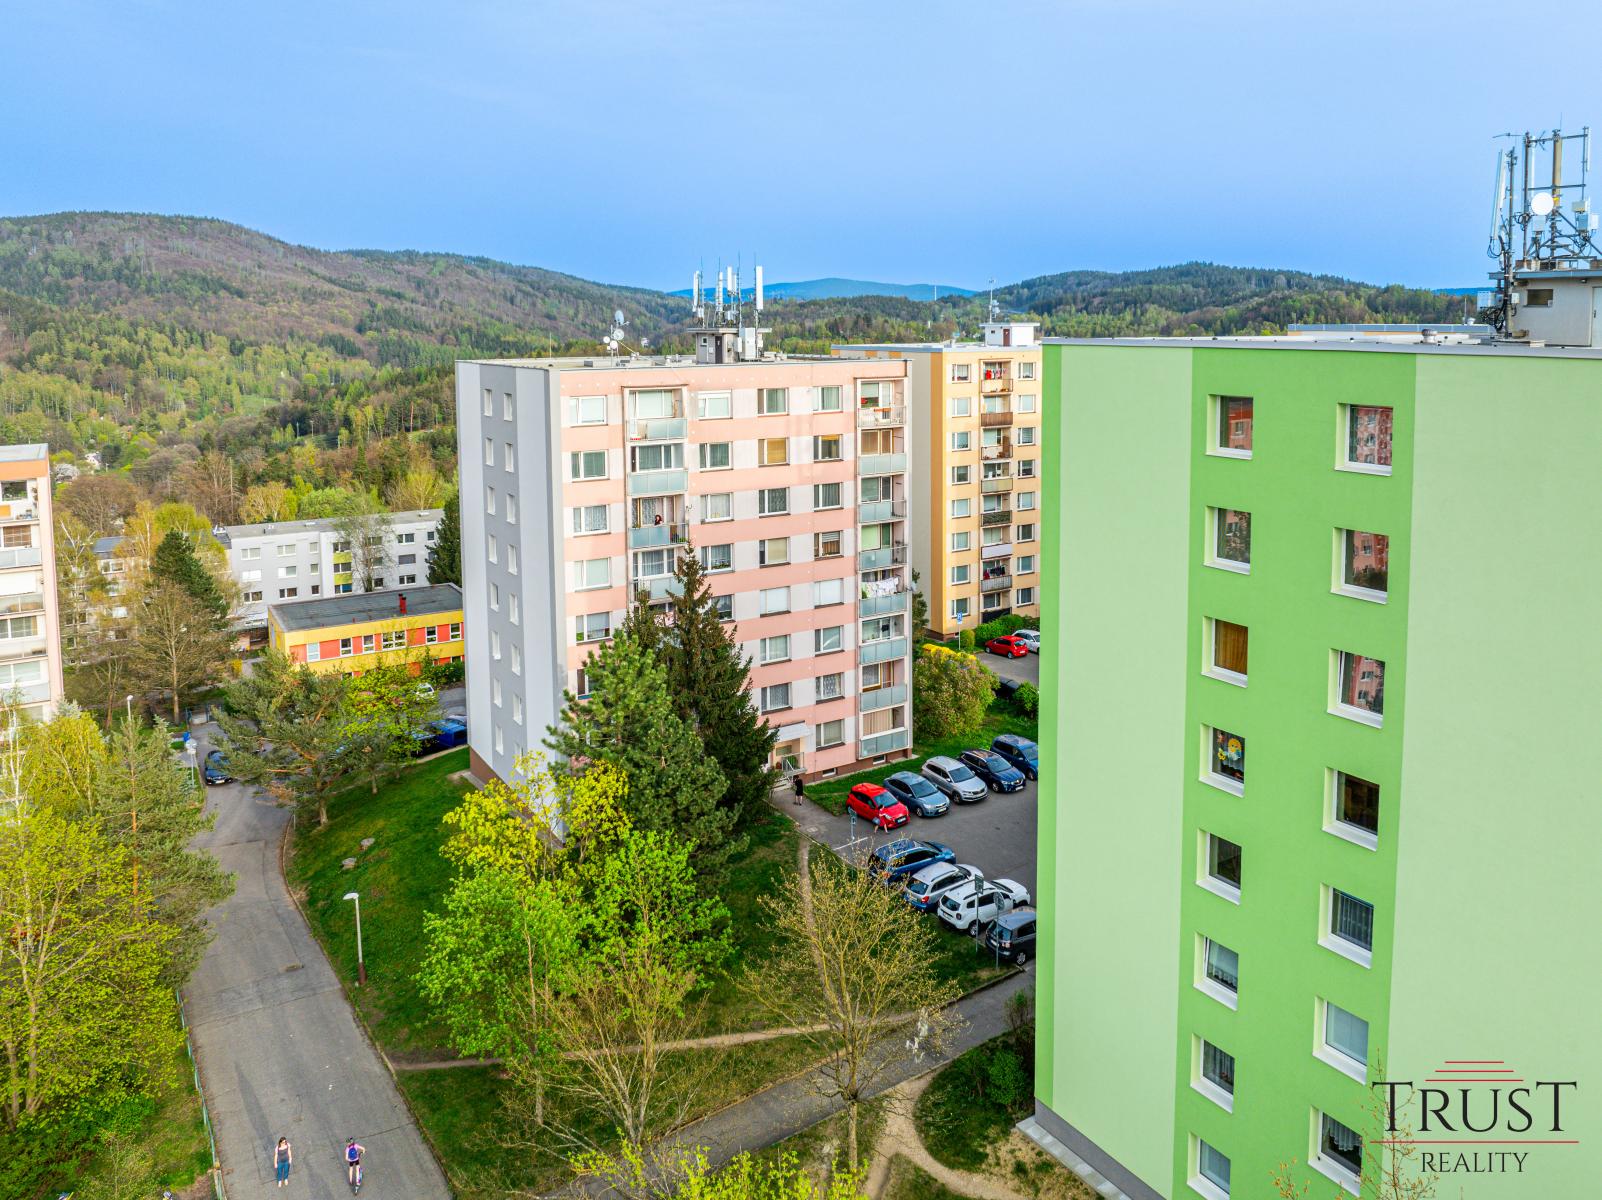 Prodej, byt 3+1, Liberec